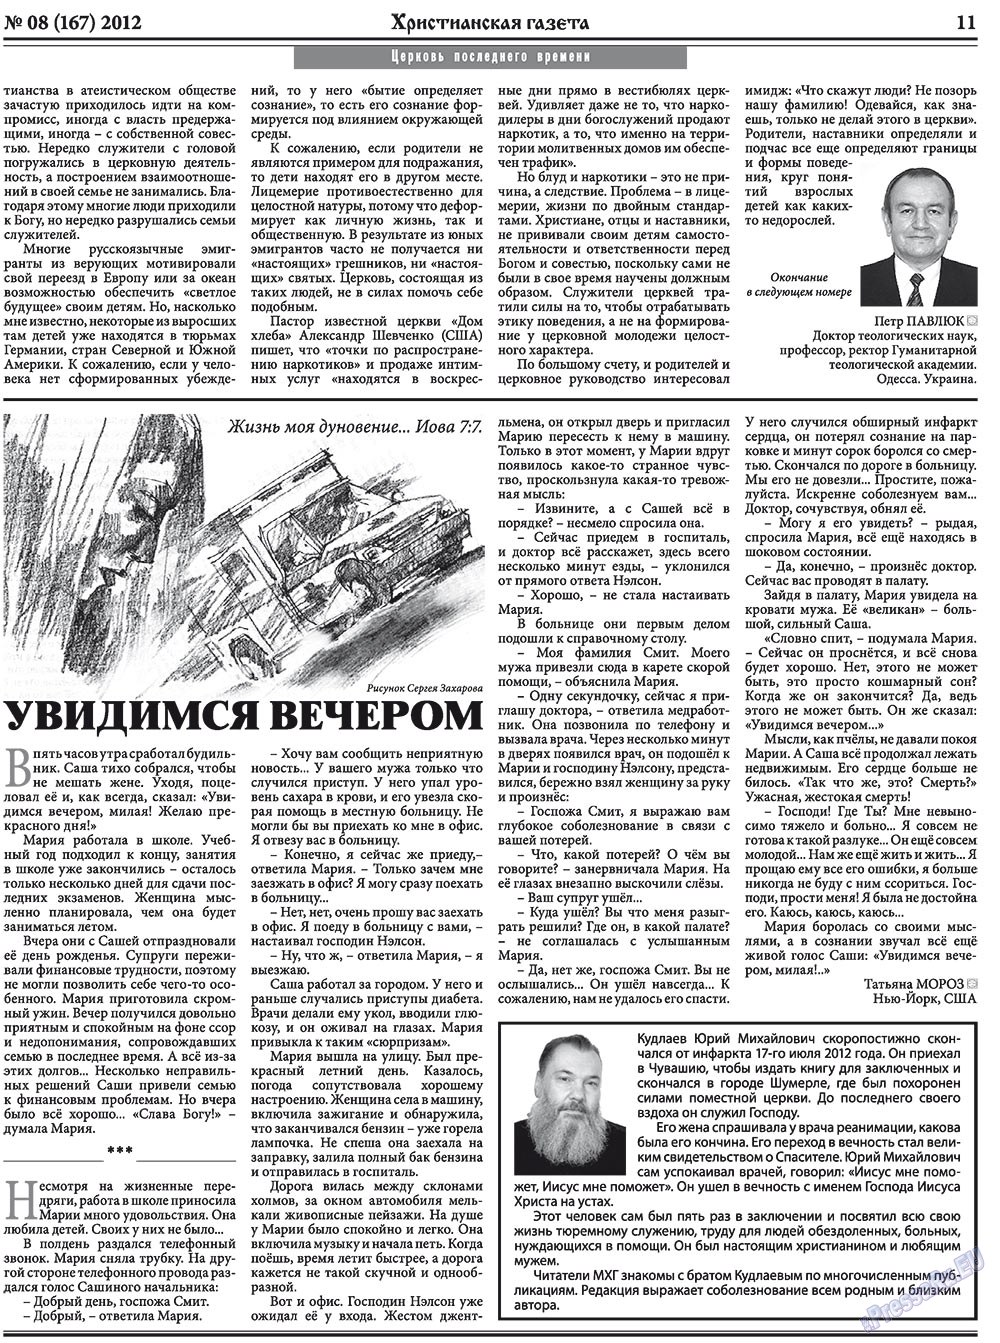 Христианская газета, газета. 2012 №8 стр.11